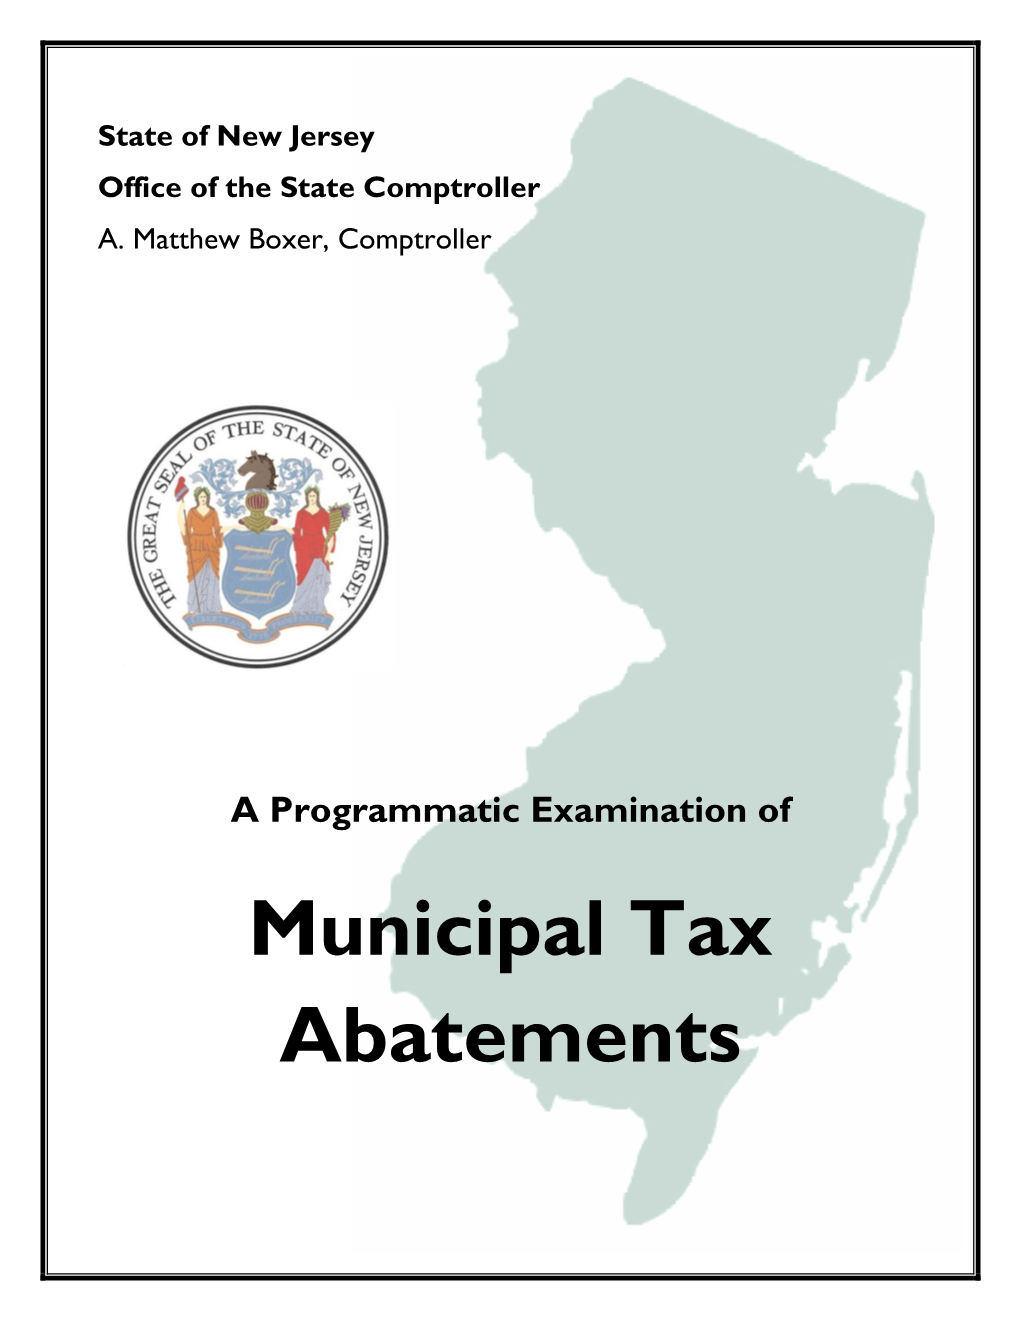 Municipal Tax Abatements